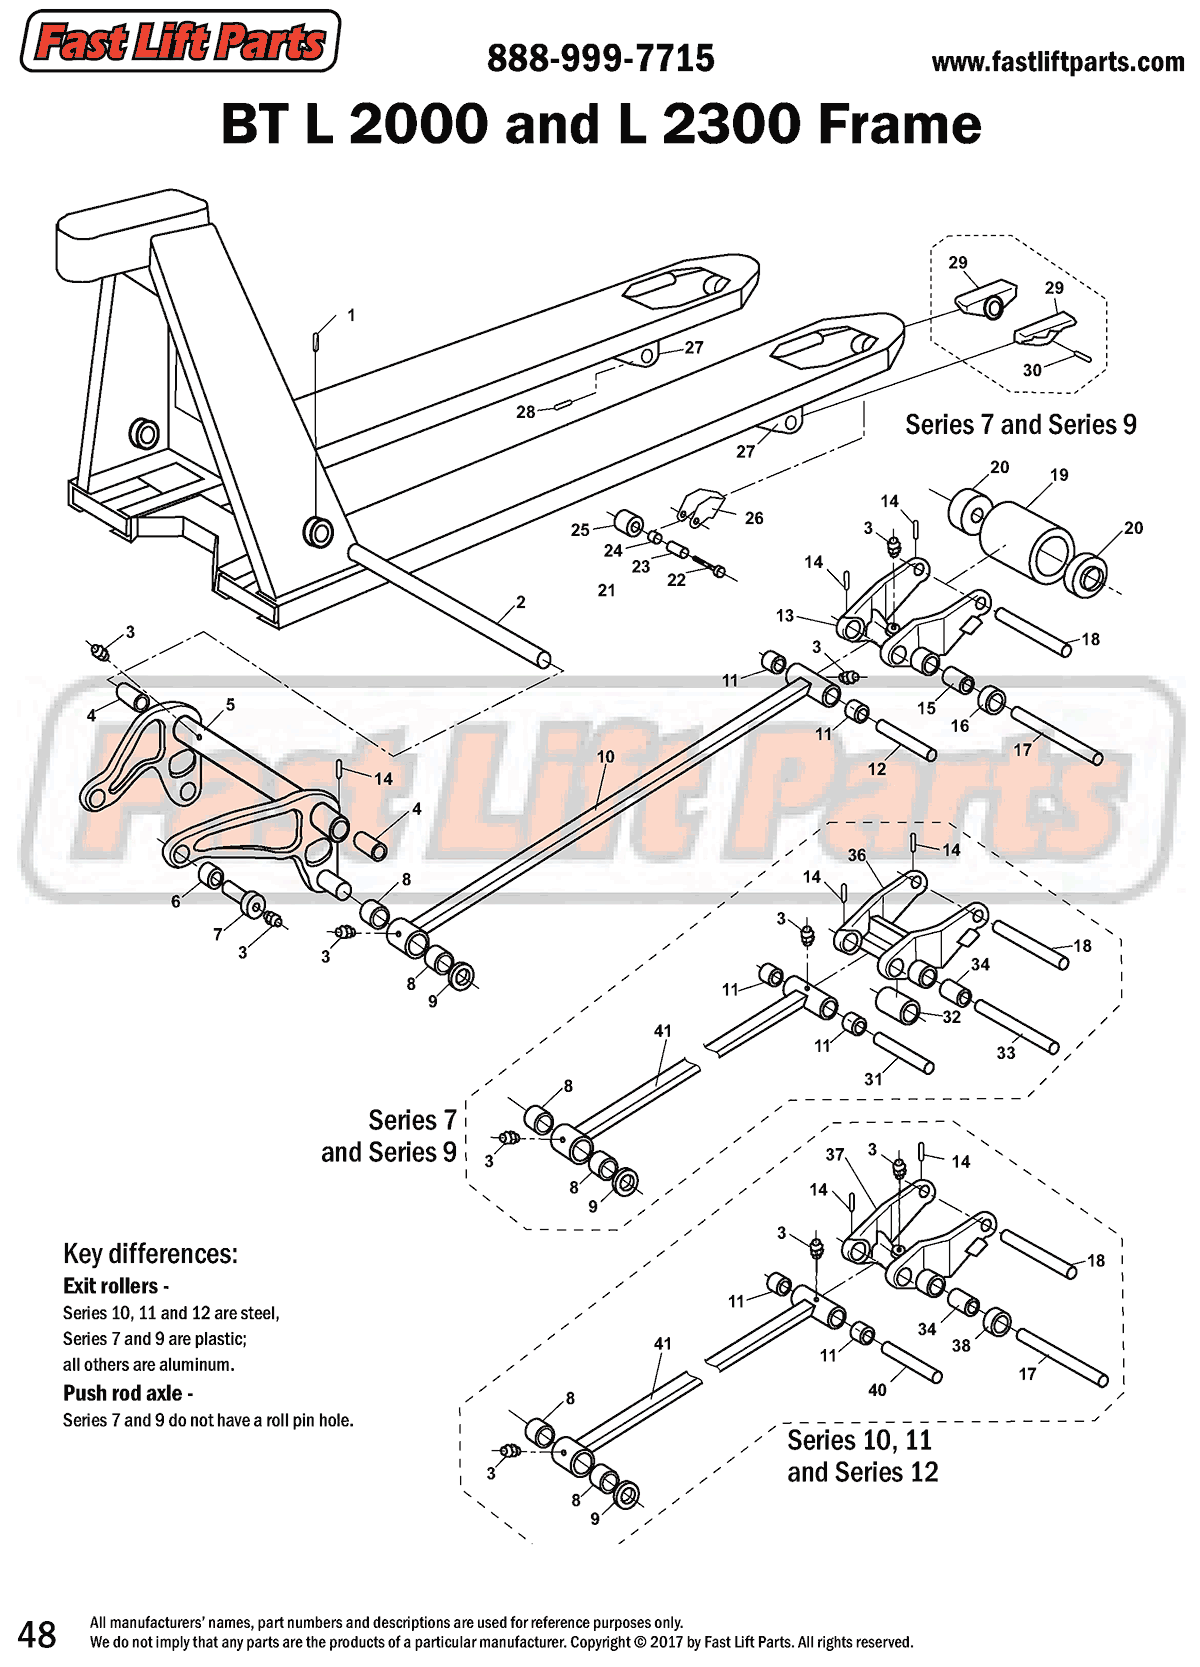 BT L 2000/L 2300 Frame Line Drawing